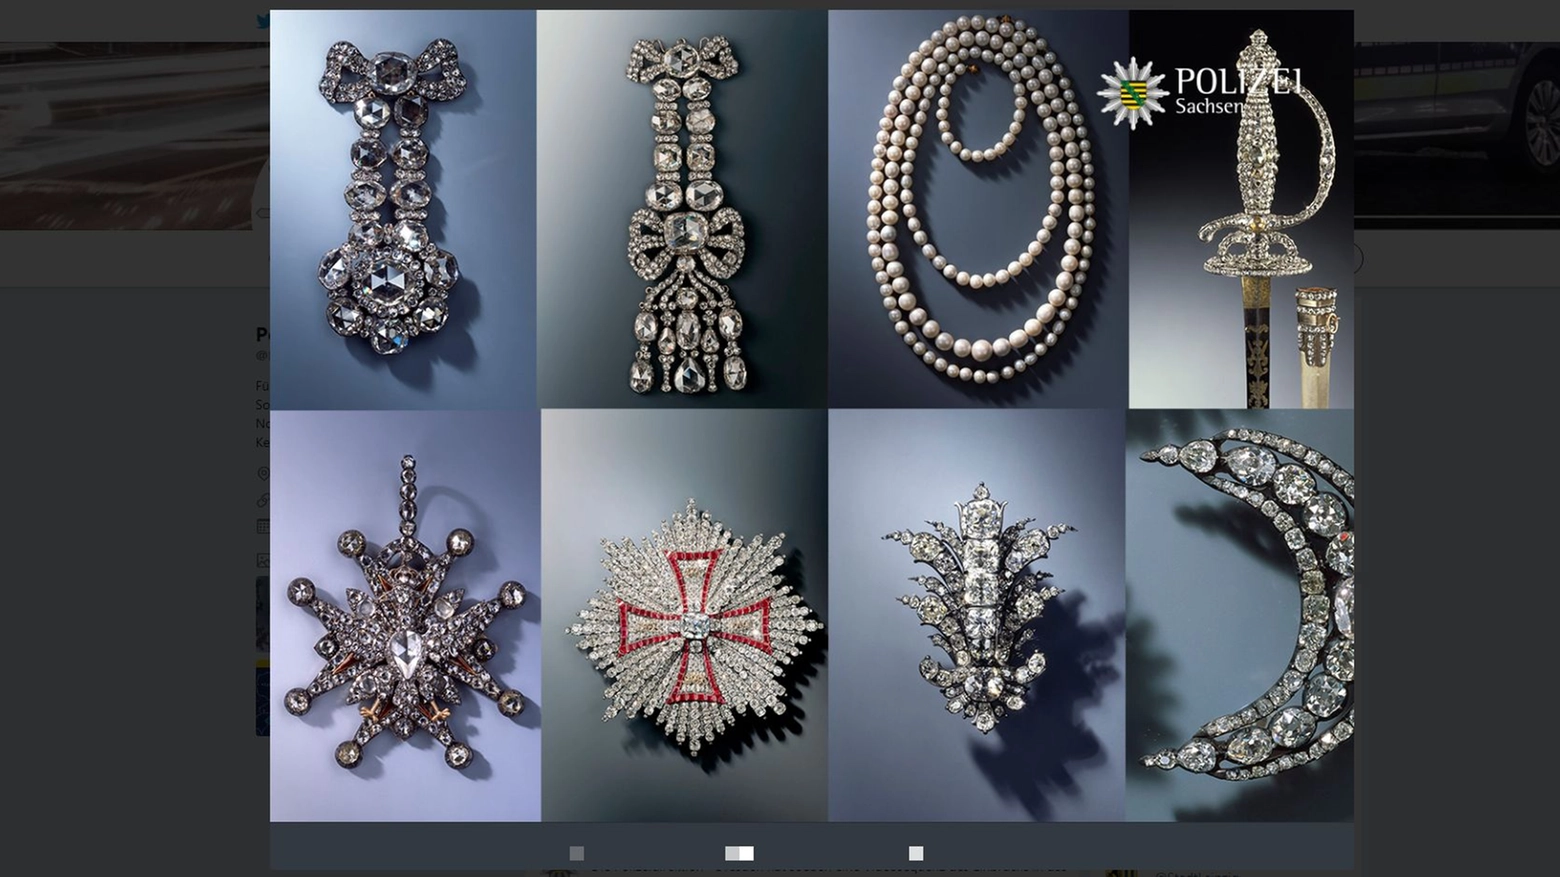 Alcuni dei gioielli rubati a Dresda nelle immagini diffuse dalla polizia su Twitter